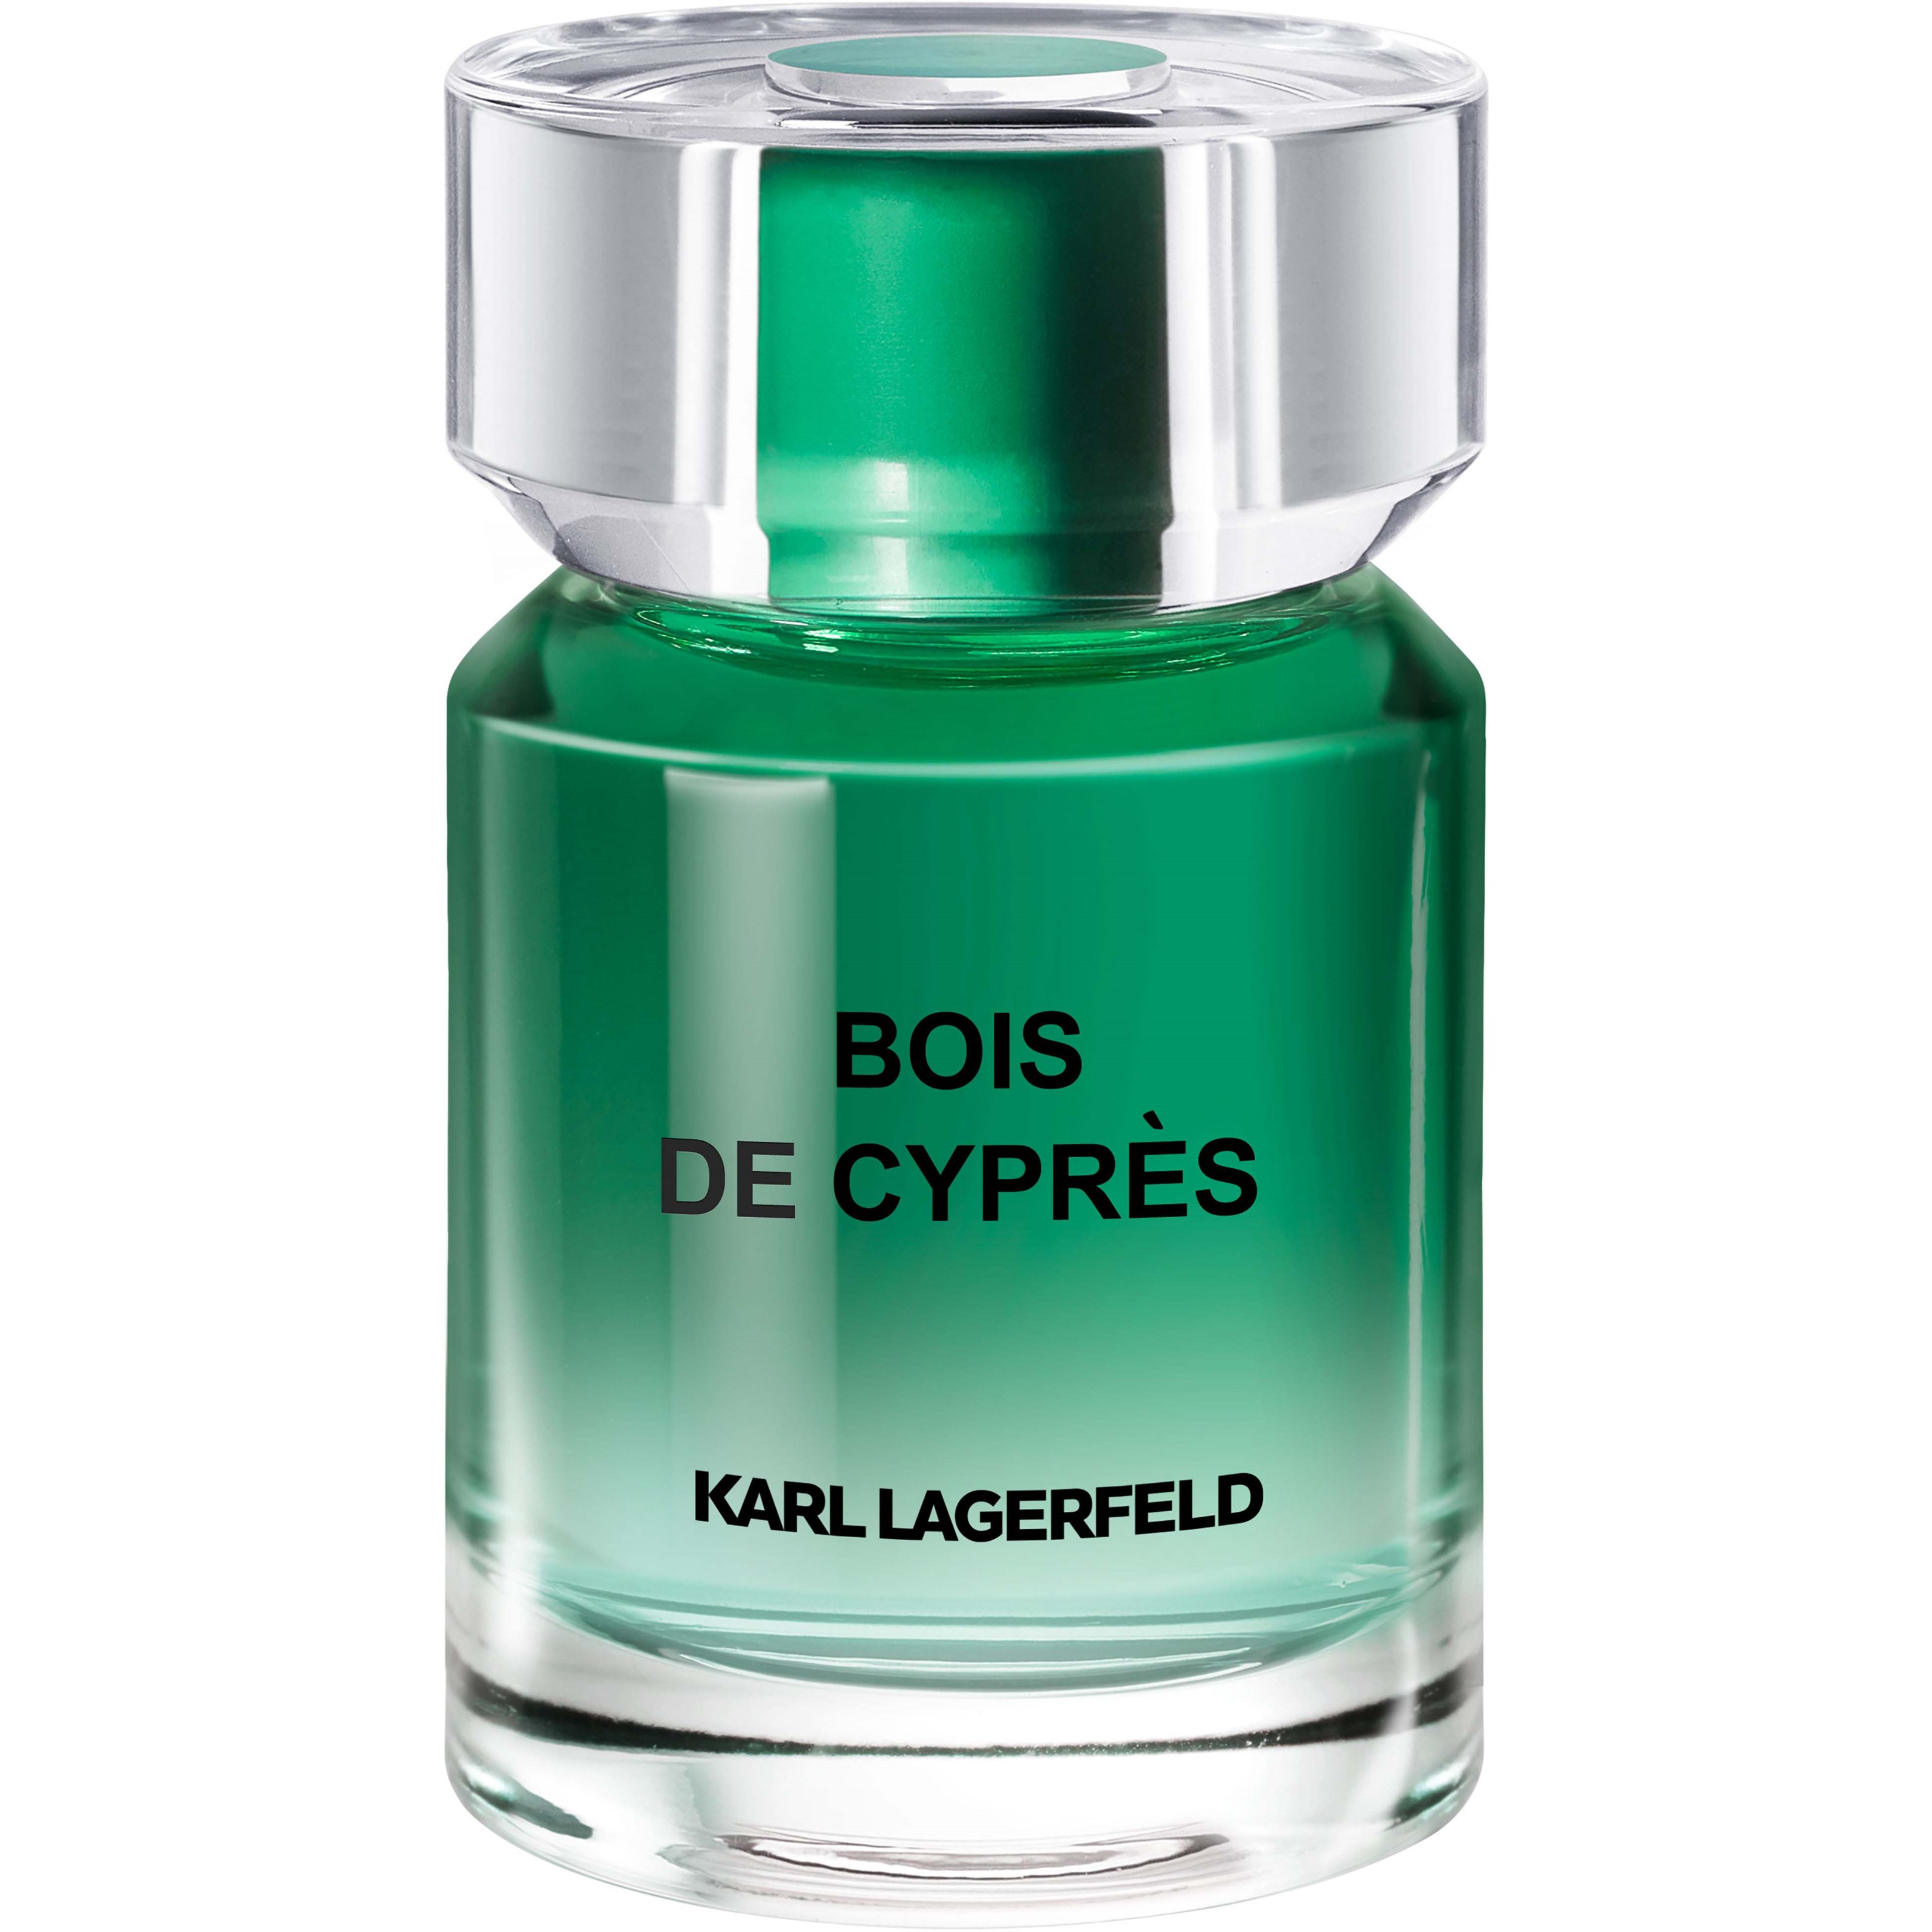 Karl Lagerfeld Karl Lagerfeld Bois de Cypres Eau de Toilette 50 ml